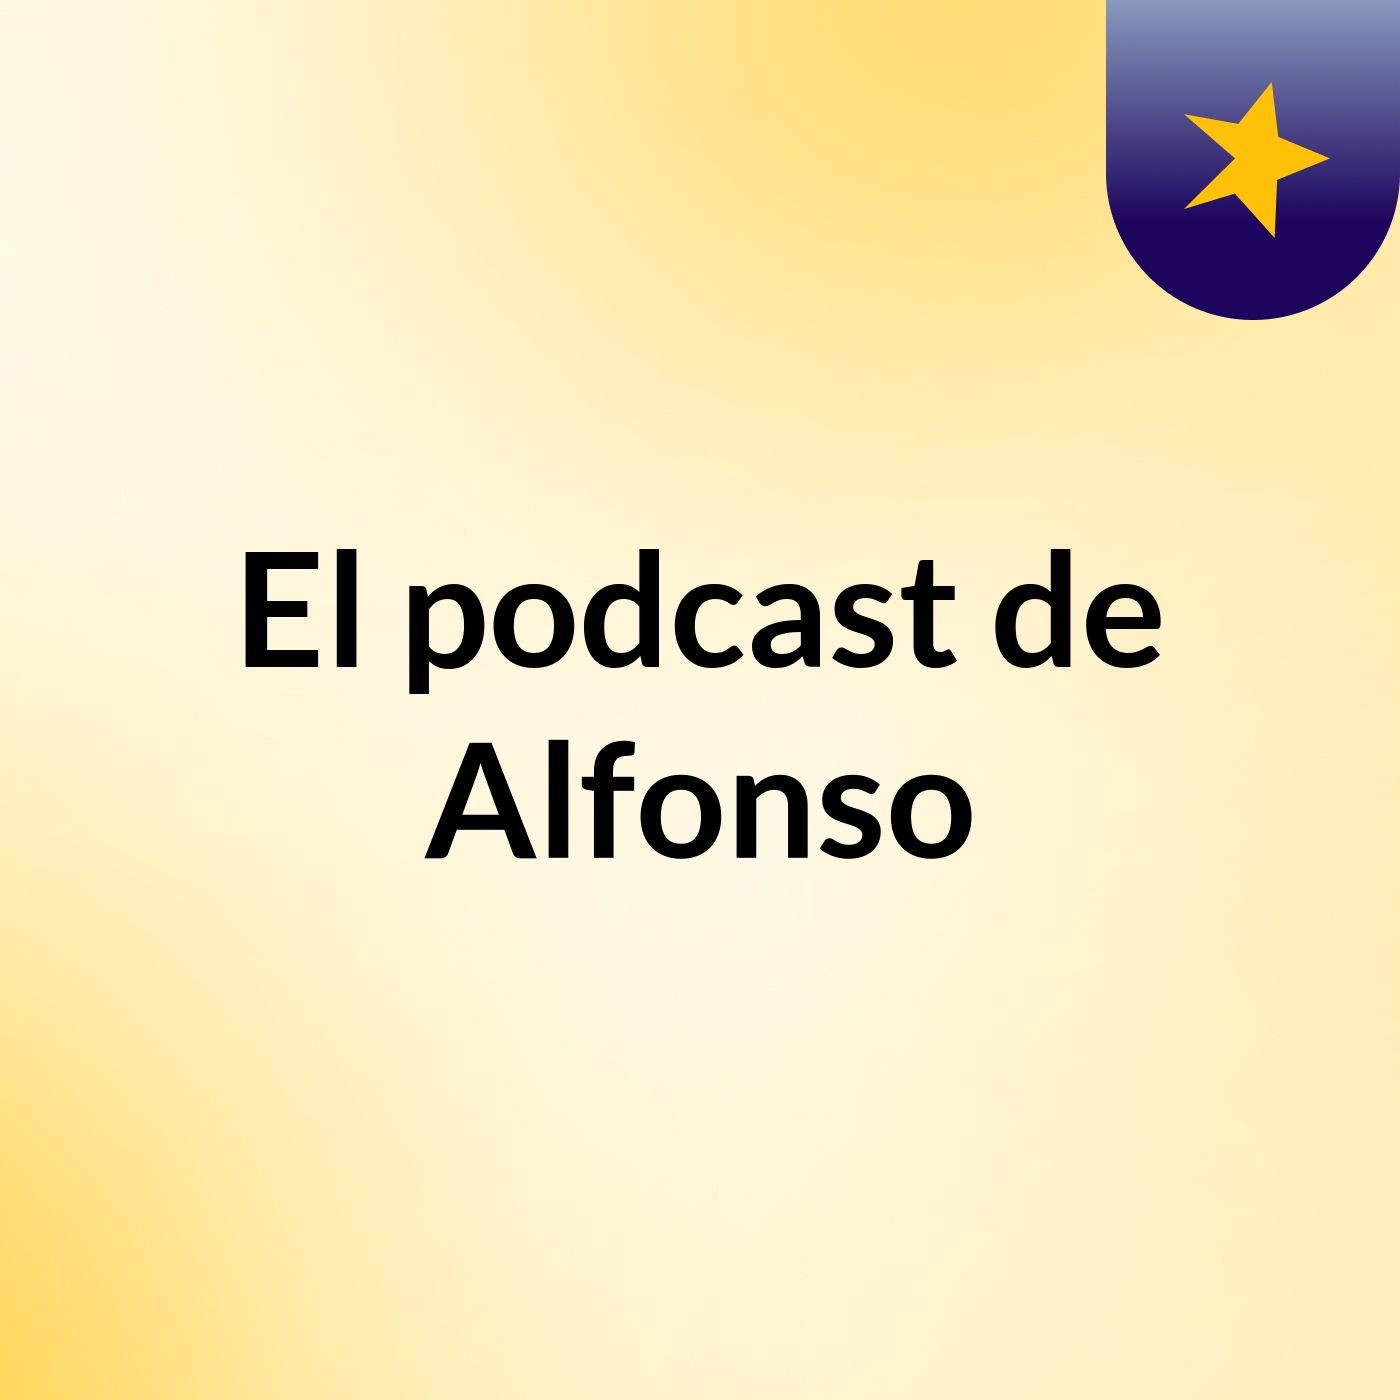 El podcast de Alfonso